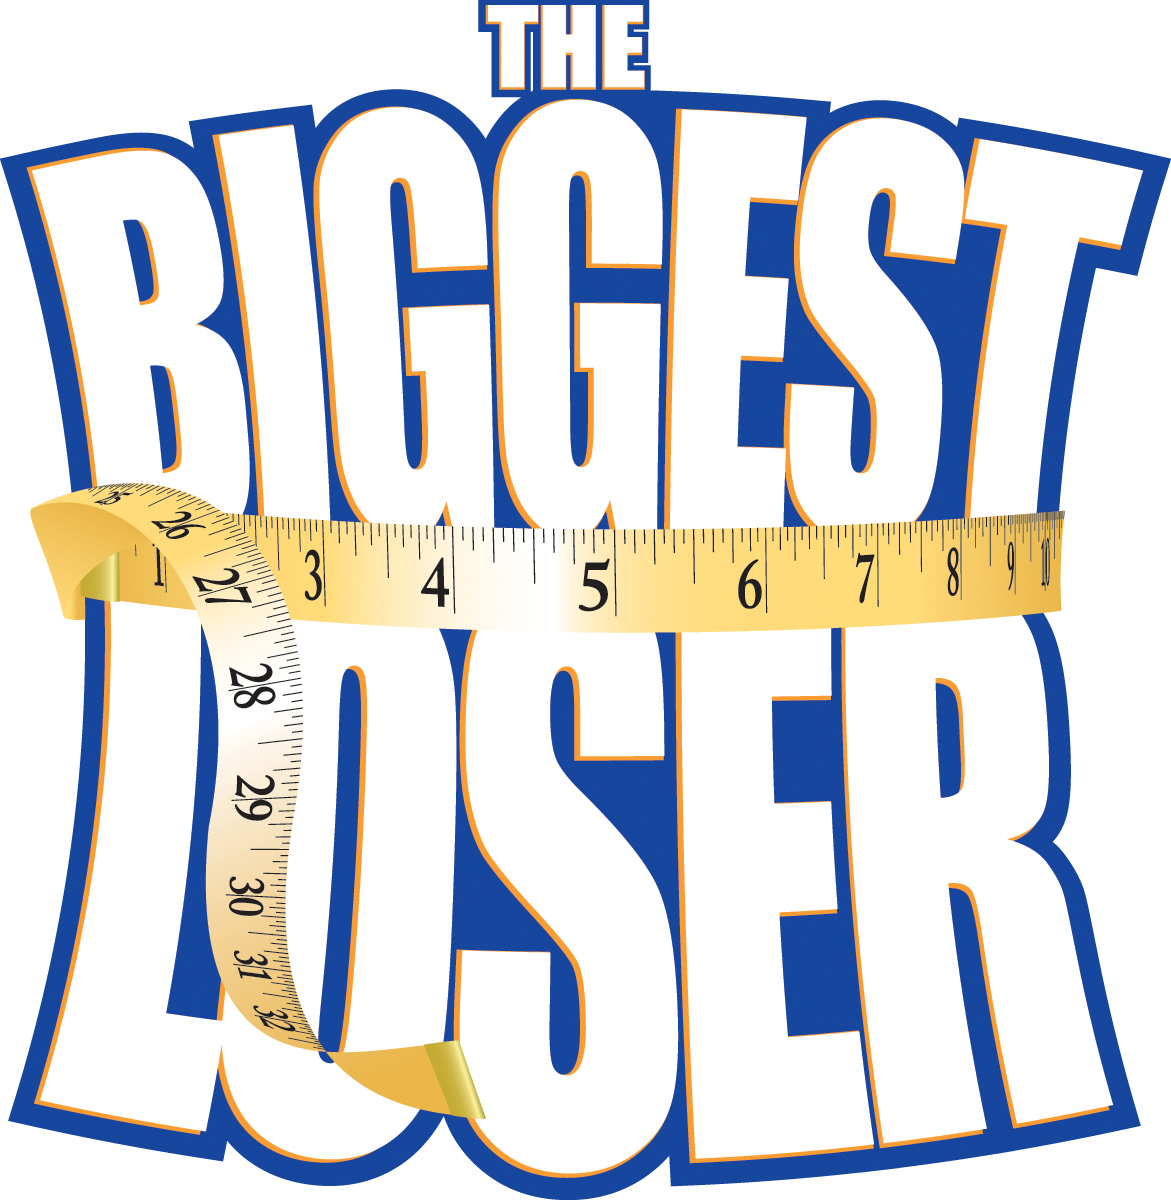 3 biggest loser